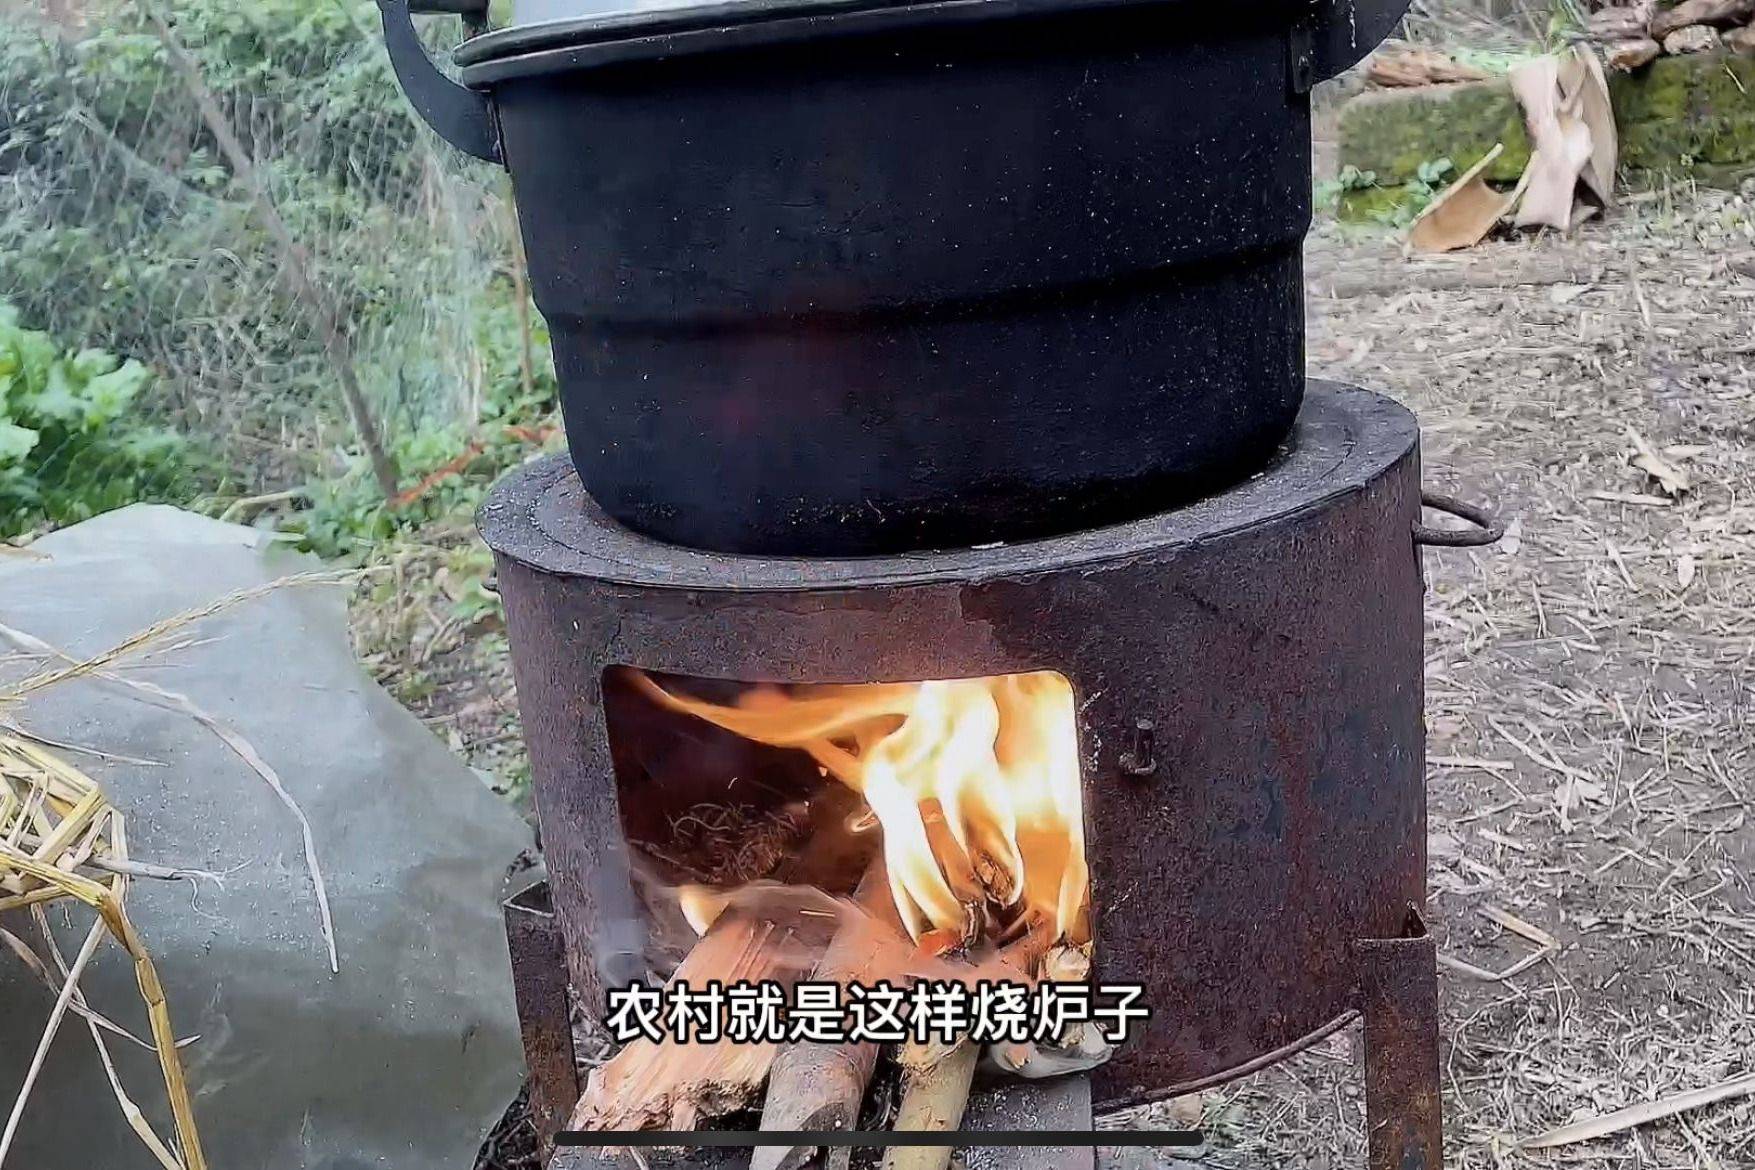 农村柴火做饭还可以取暖